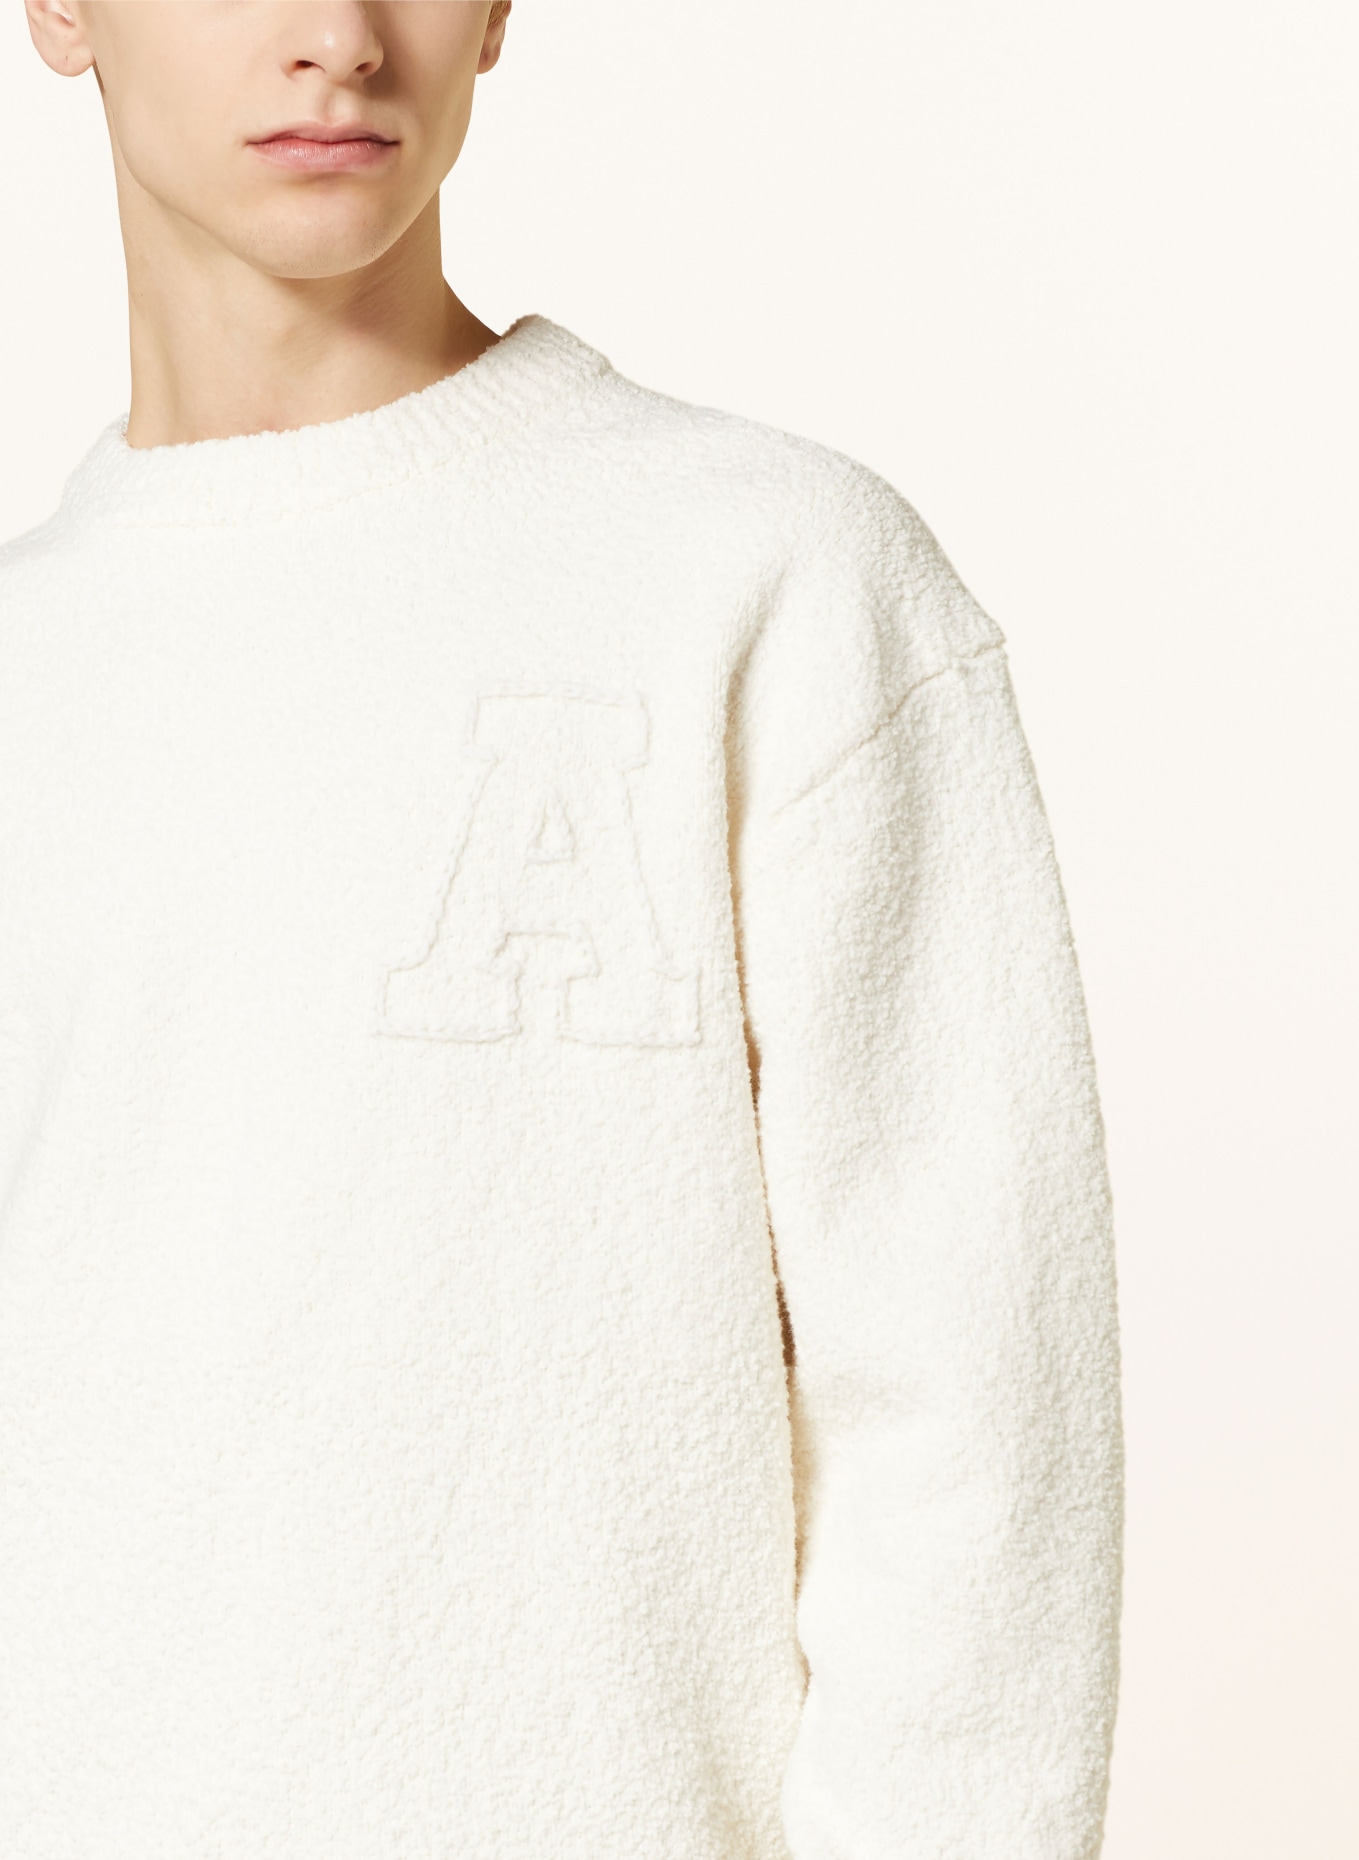 AXEL ARIGATO Sweater, Color: ECRU (Image 4)